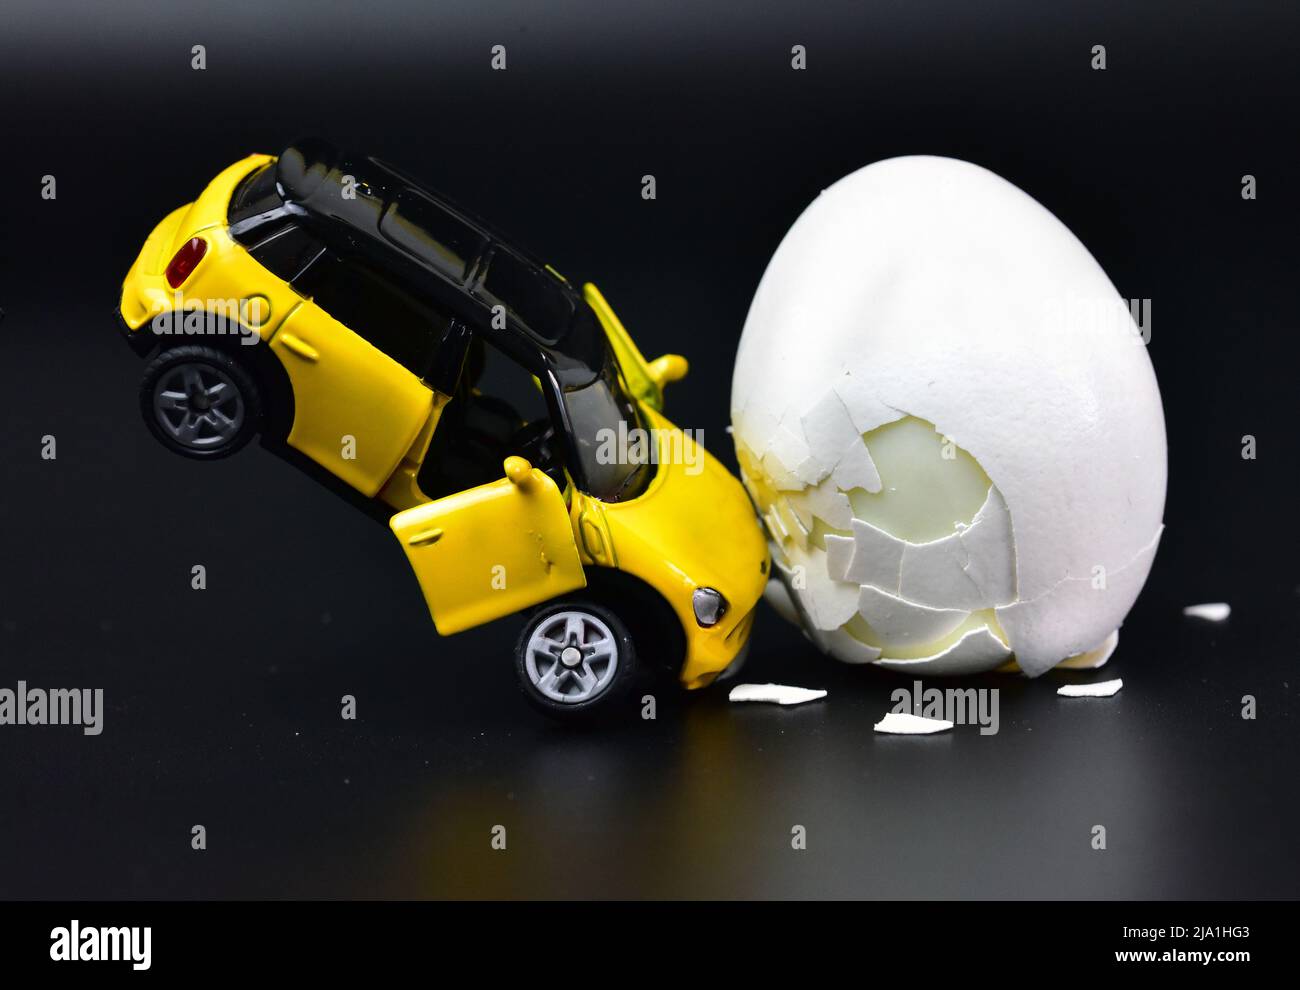 accident de voiture jouet drôle avec un oeuf de poulet Banque D'Images